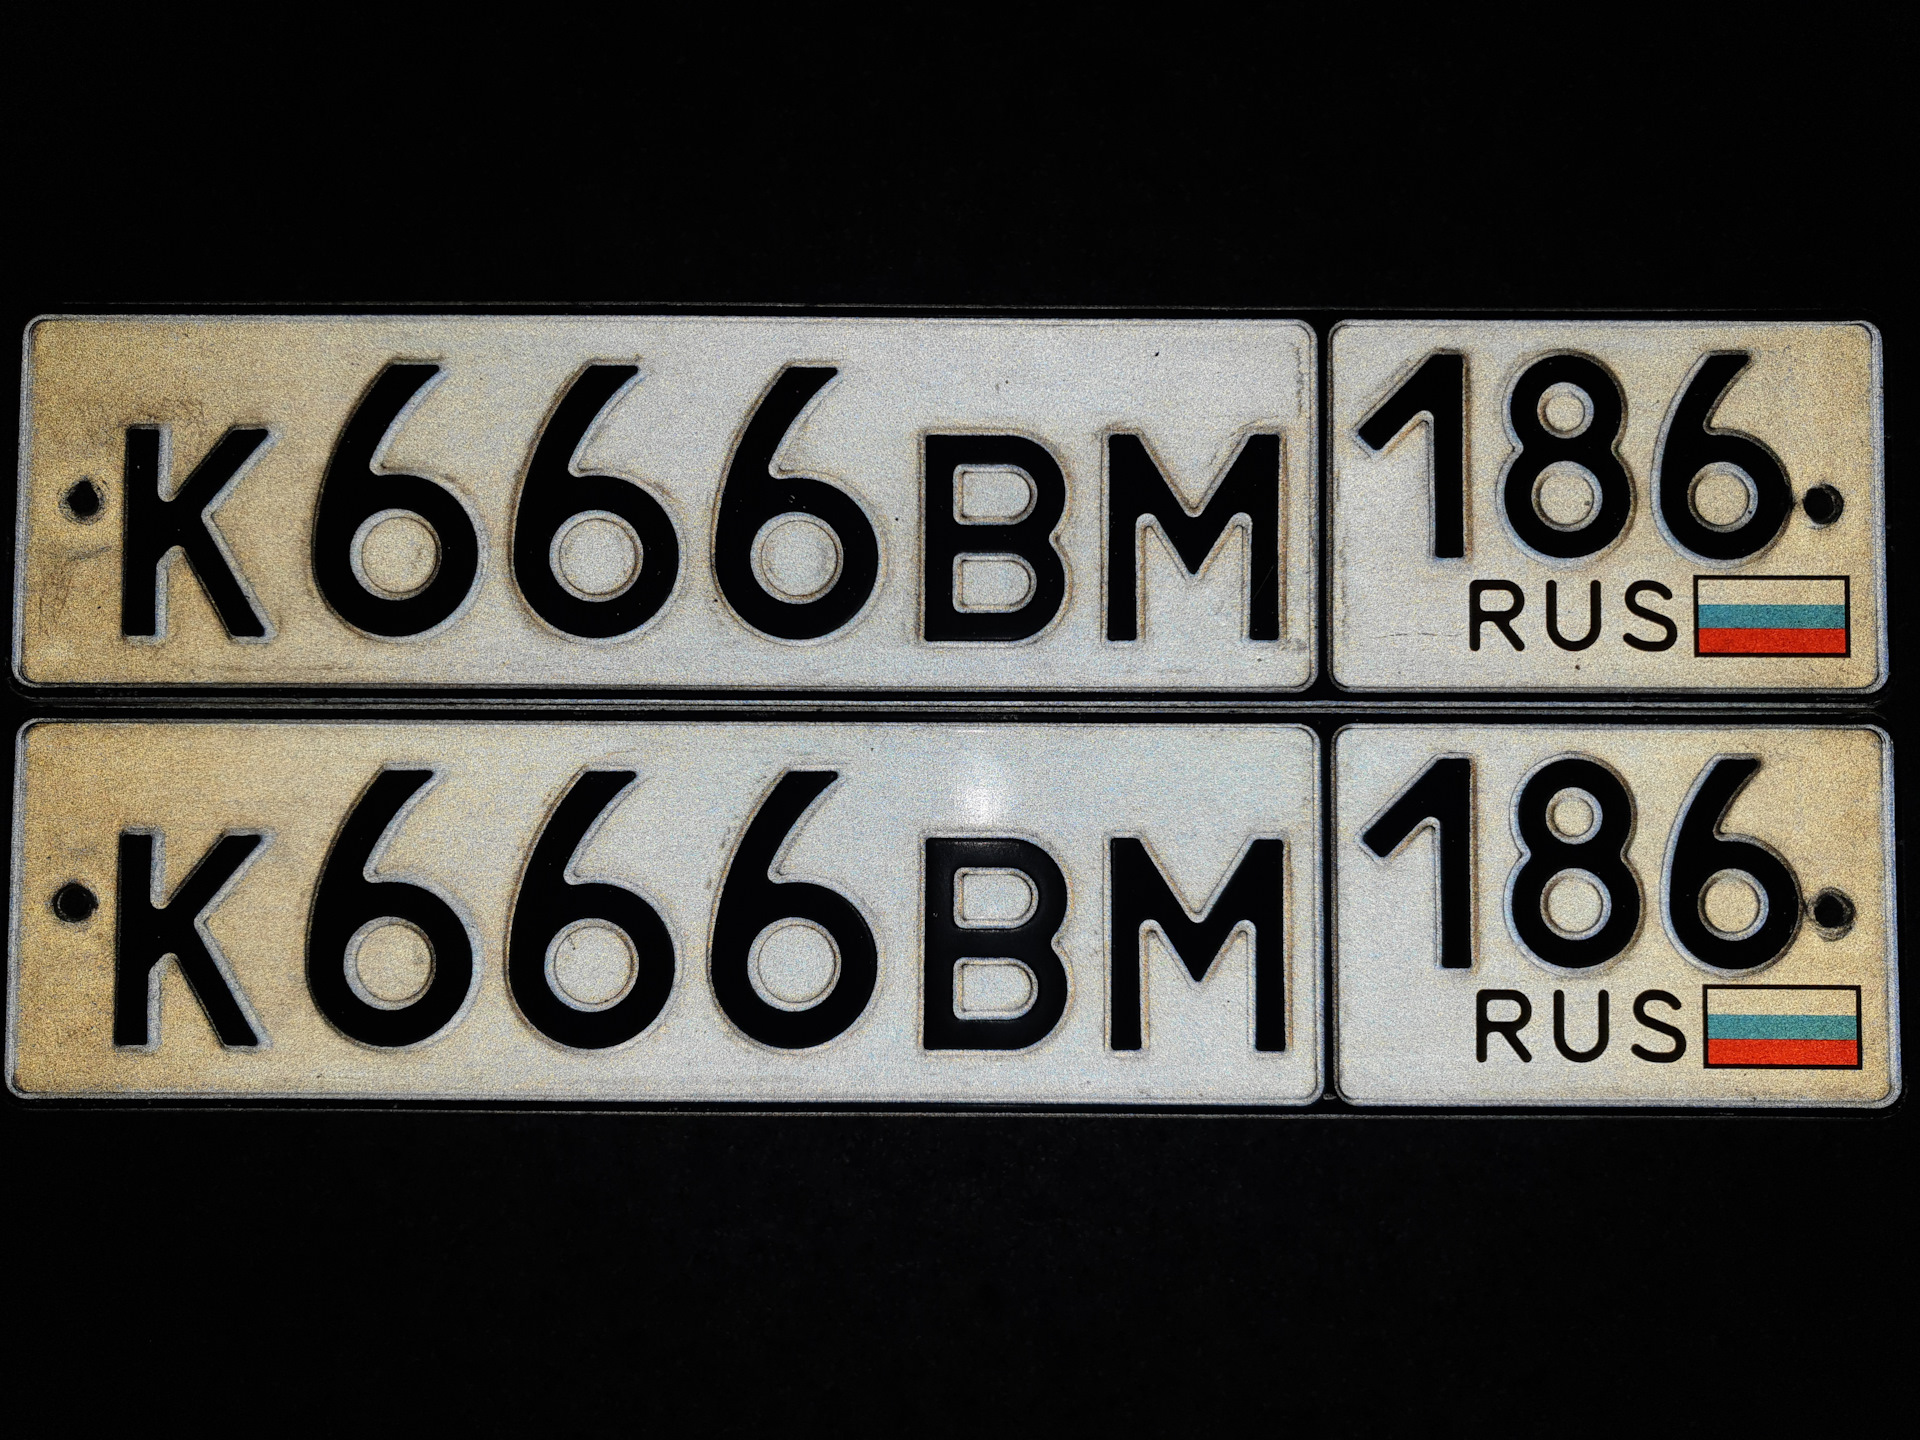 Как сохранить номера на авто. ГРЗ артикул Тойота. 77 Rus старые номера. Дублирующий номер на машине шрифт.